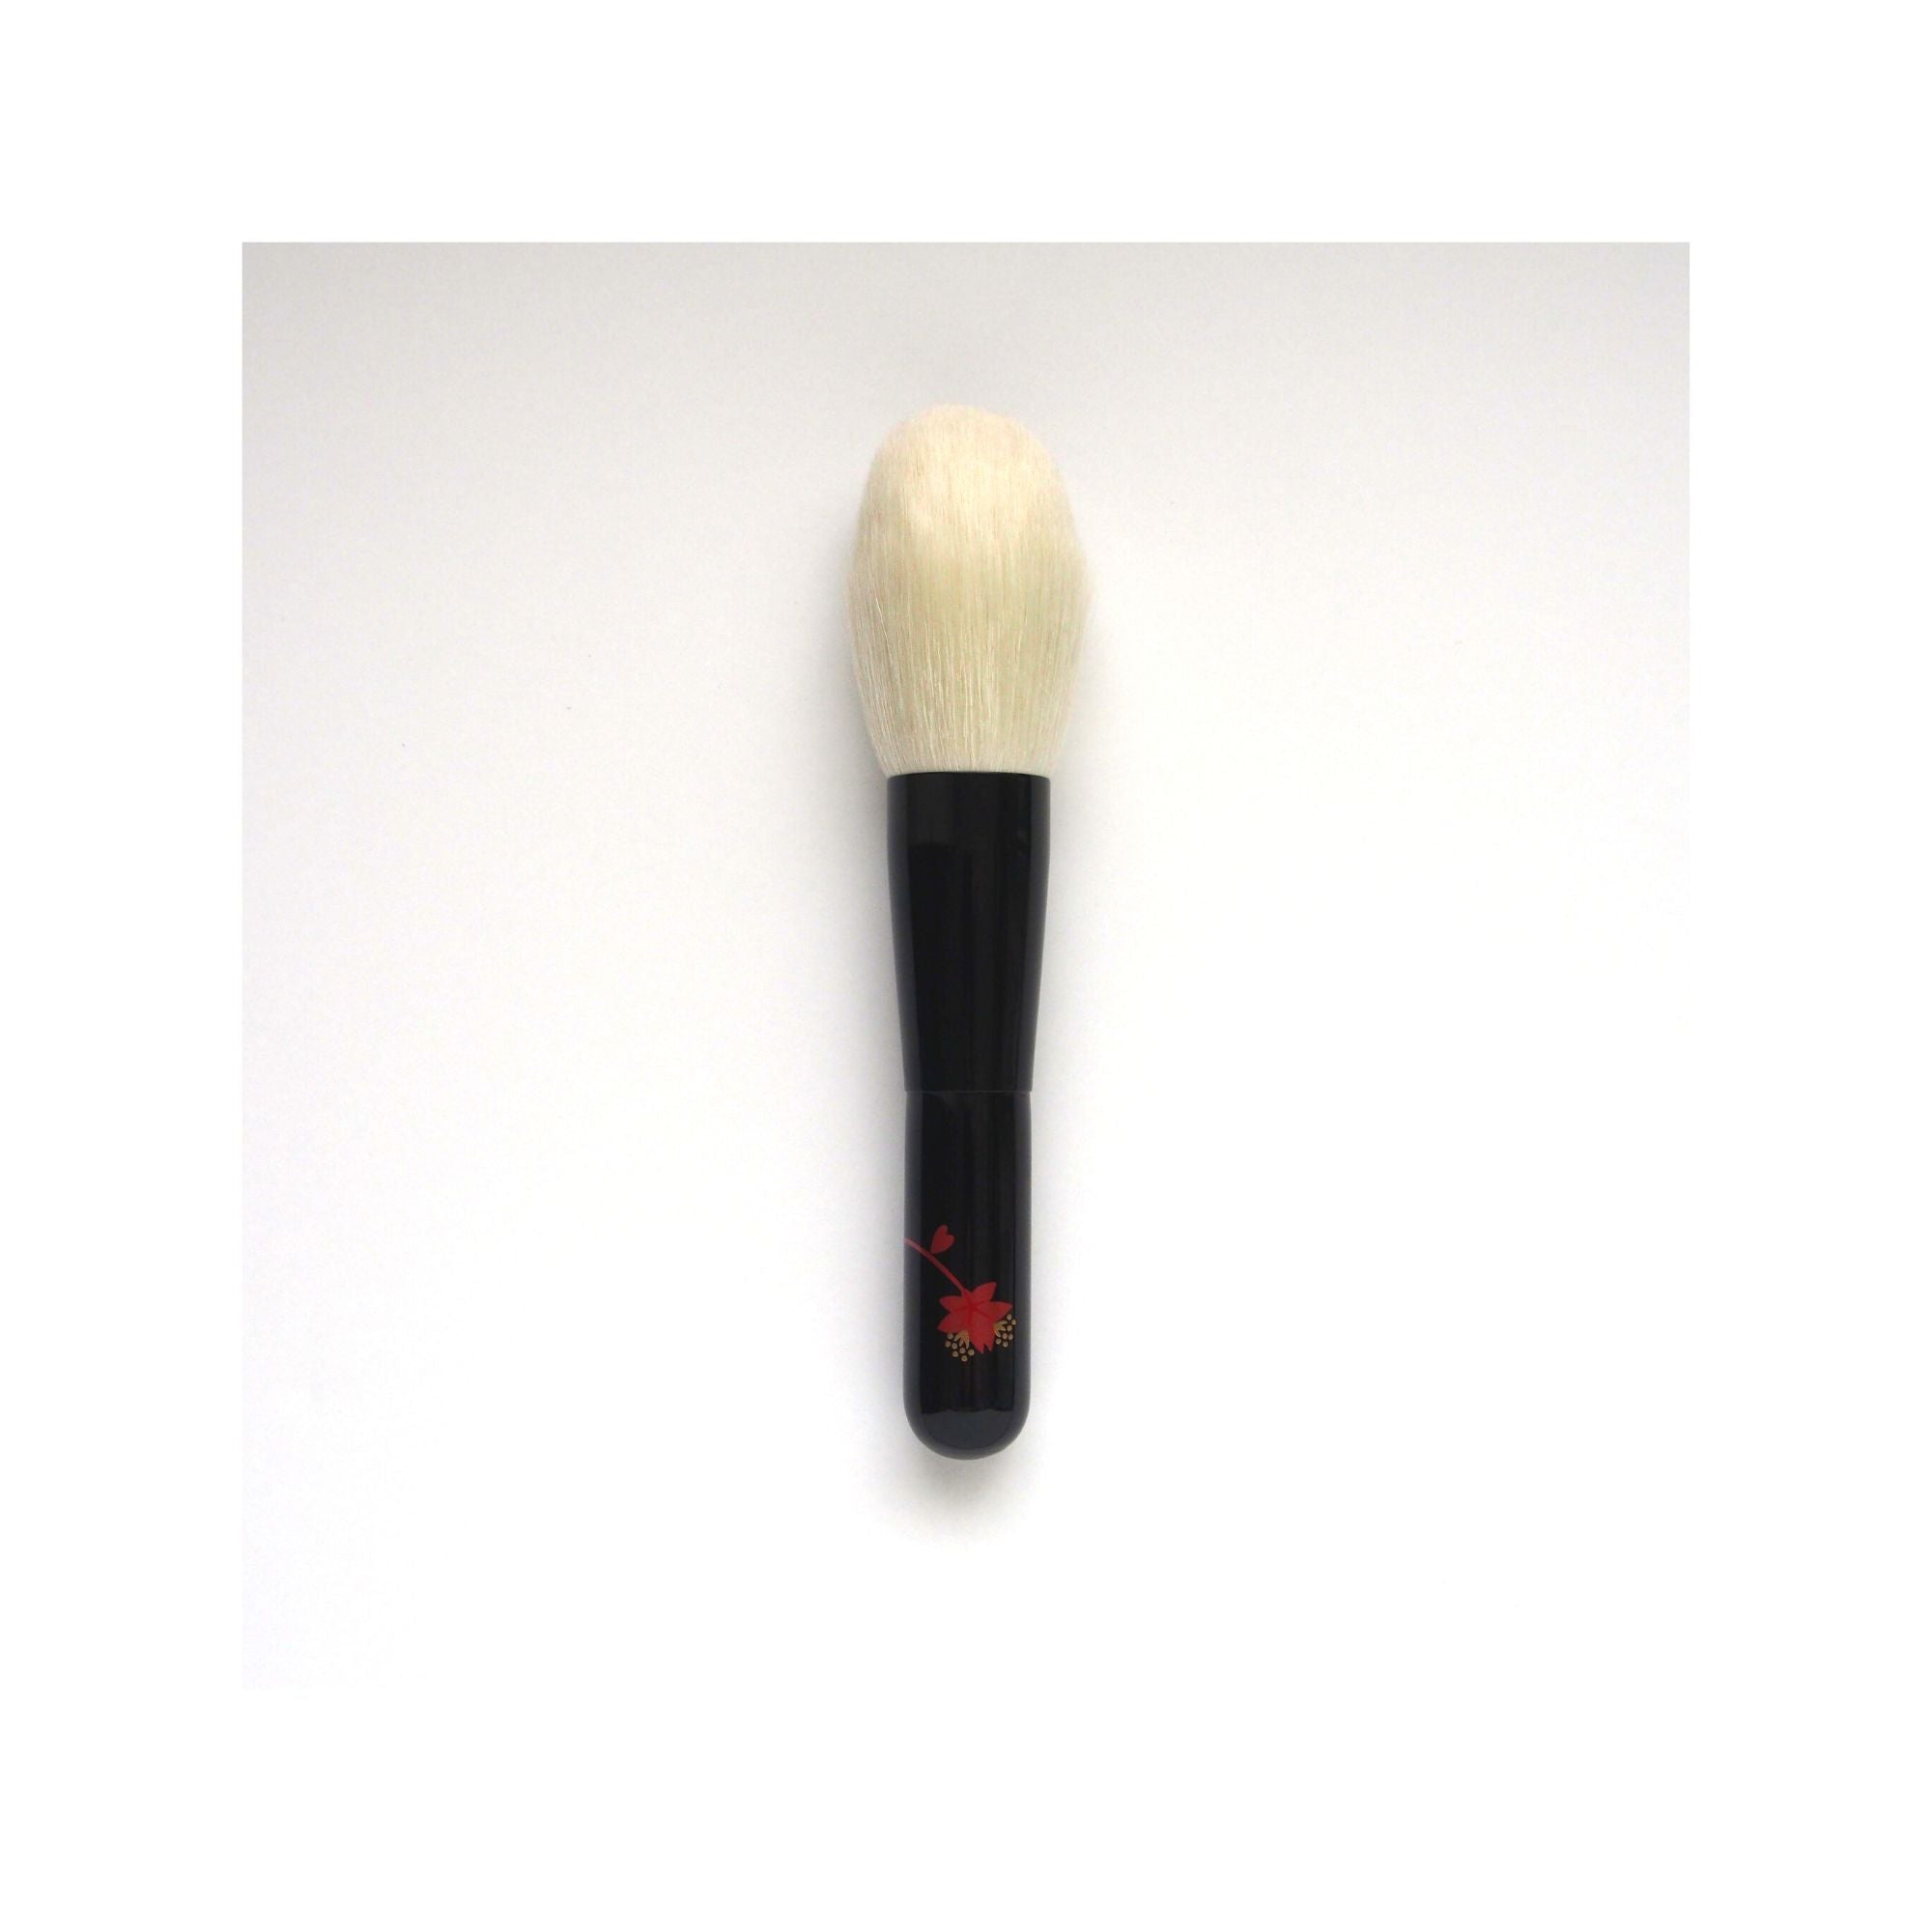 Koyudo Yoshiki Saibikoho Sakura Makie Powder Brush (Limited Edition) - Fude Beauty, Japanese Makeup Brushes